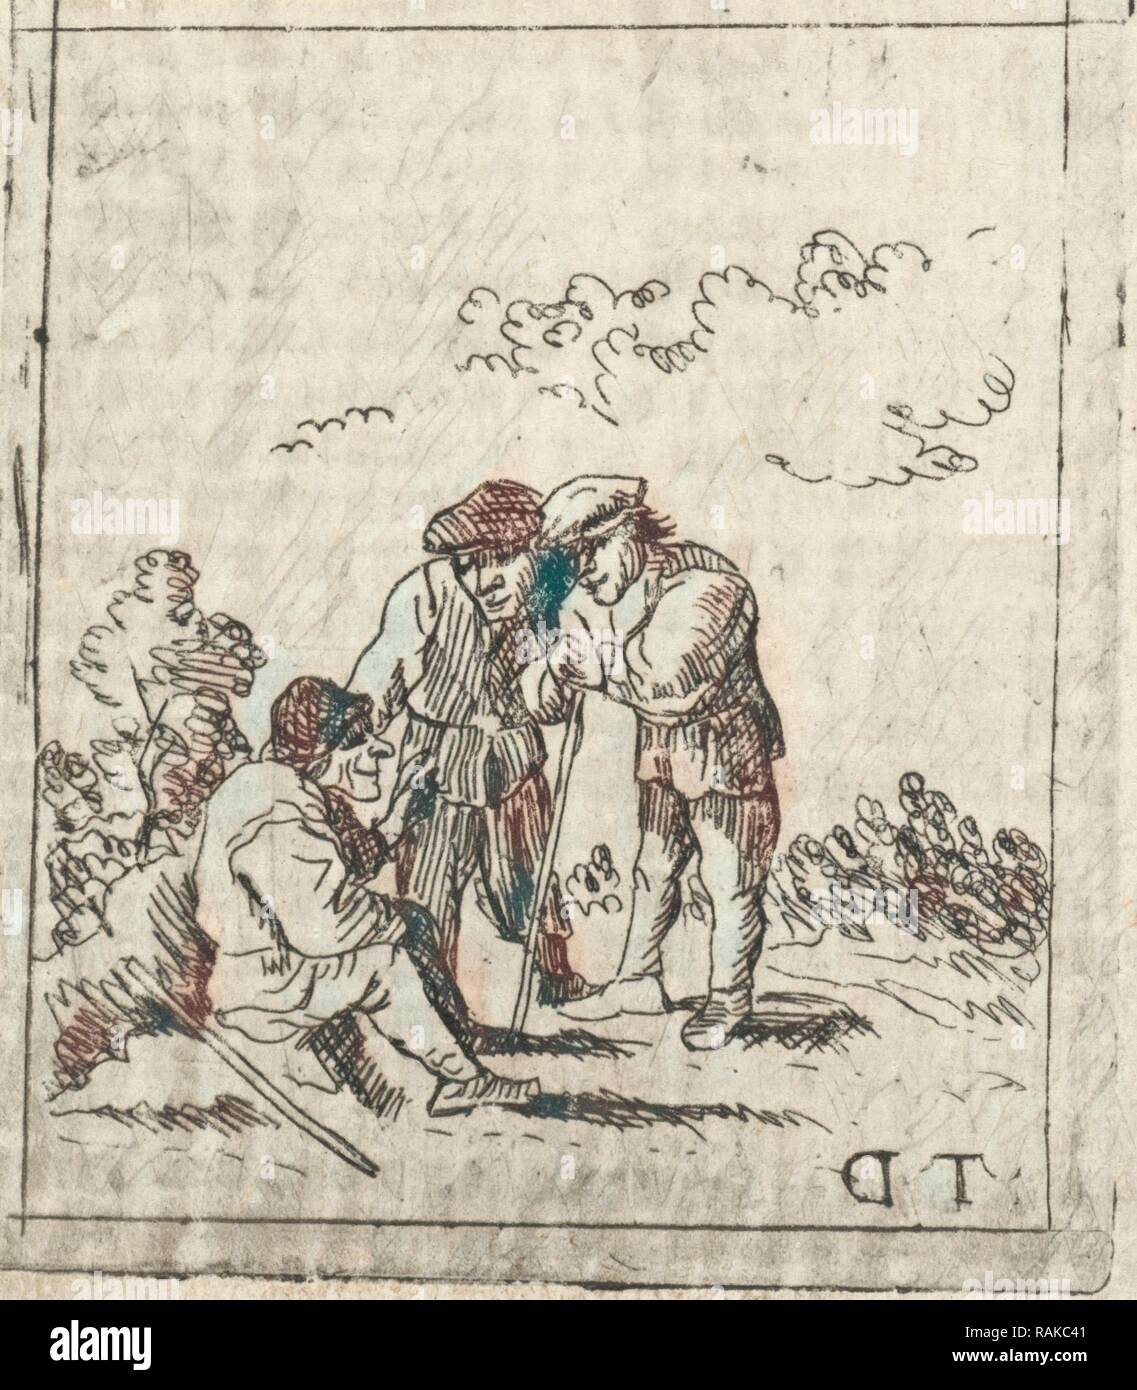 Tre uomini di parlarsi, anonimo, 1700 - 1799. Reinventato da Gibon. Arte Classica con un tocco di moderno reinventato Foto Stock